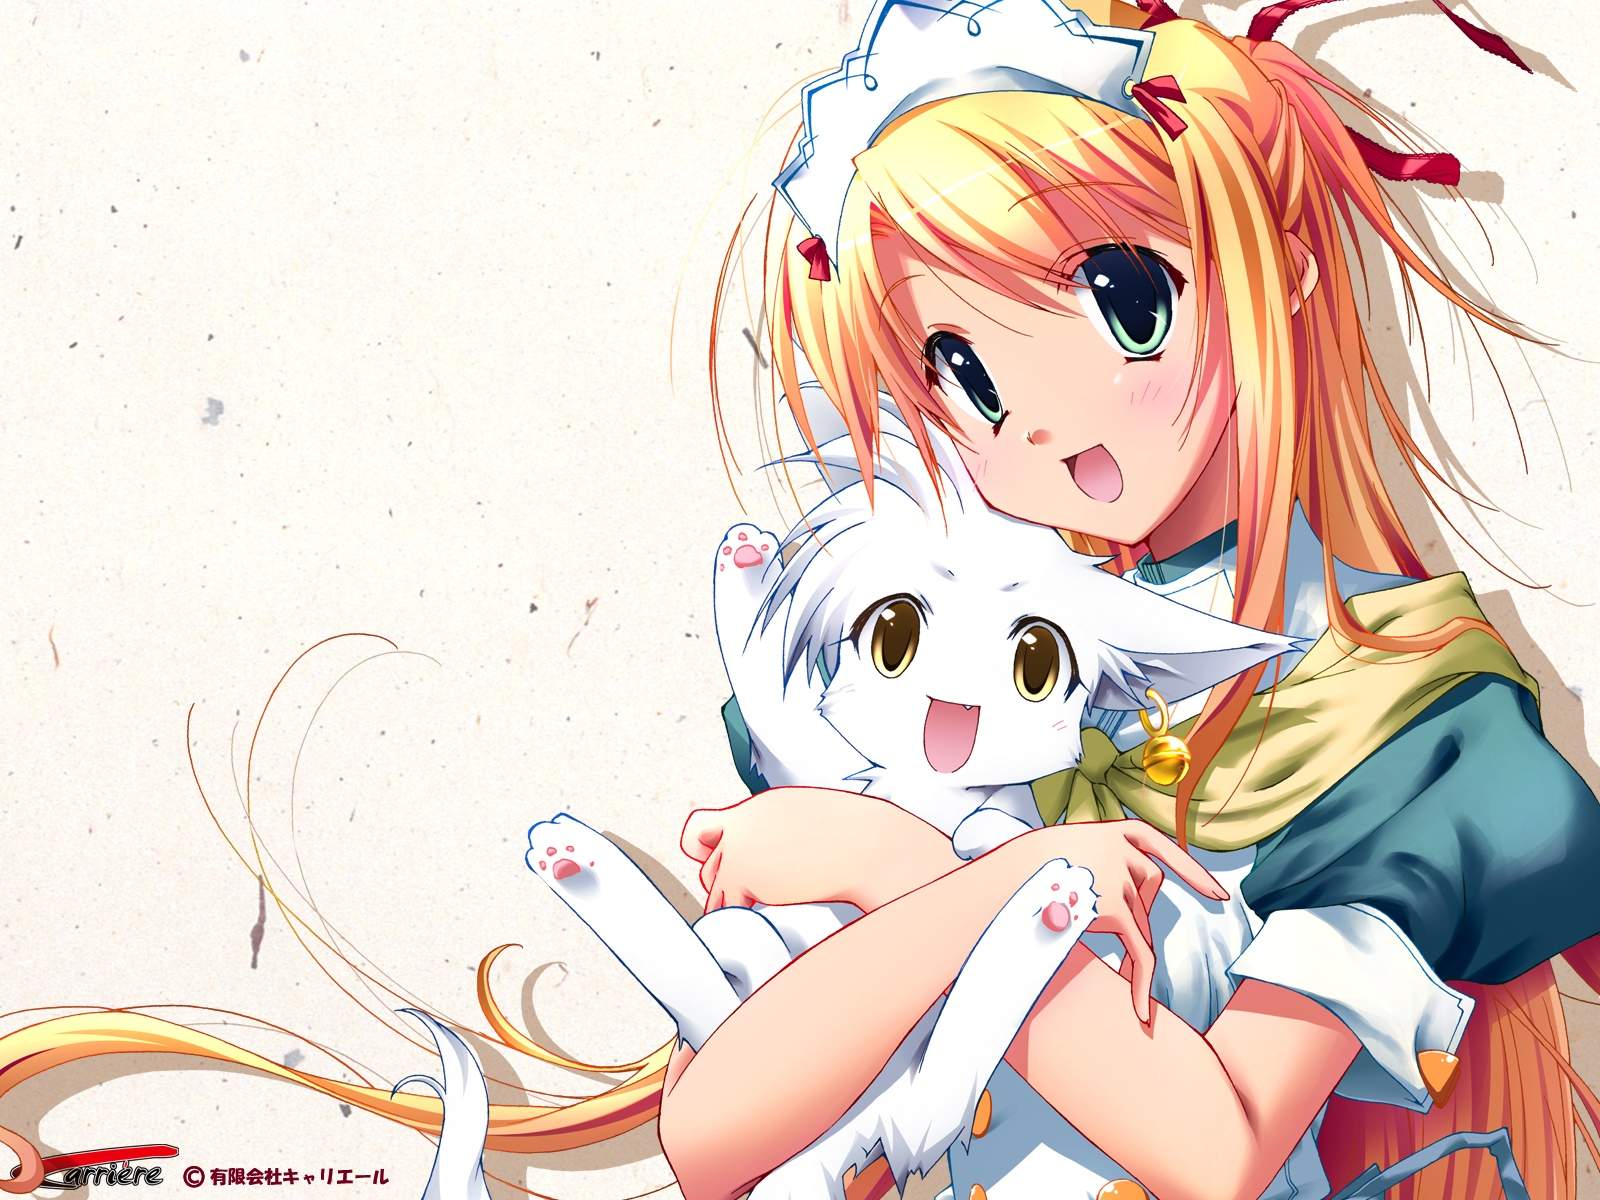 Anime - Wallpapers ~ Zutto Kawaii - Animes, Livros, Games, Dramas ...